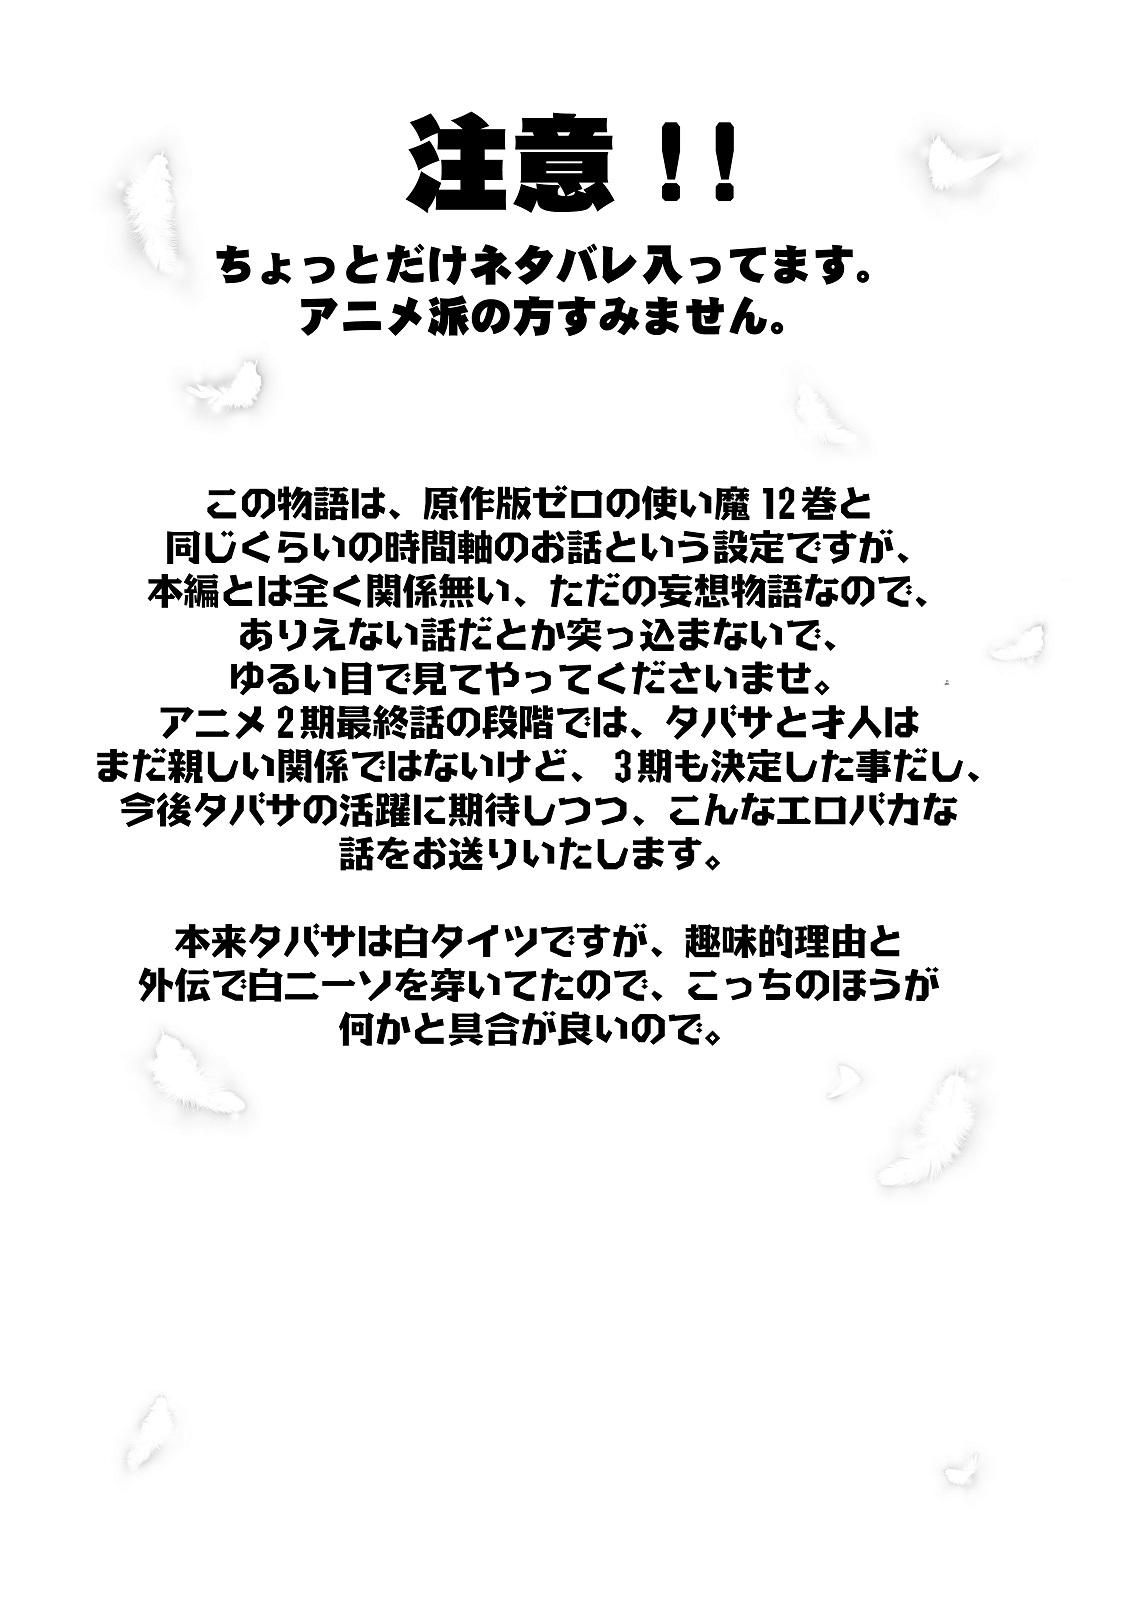 Peituda Kishi no Keiyaku - Zero no tsukaima Dirty Talk - Page 2